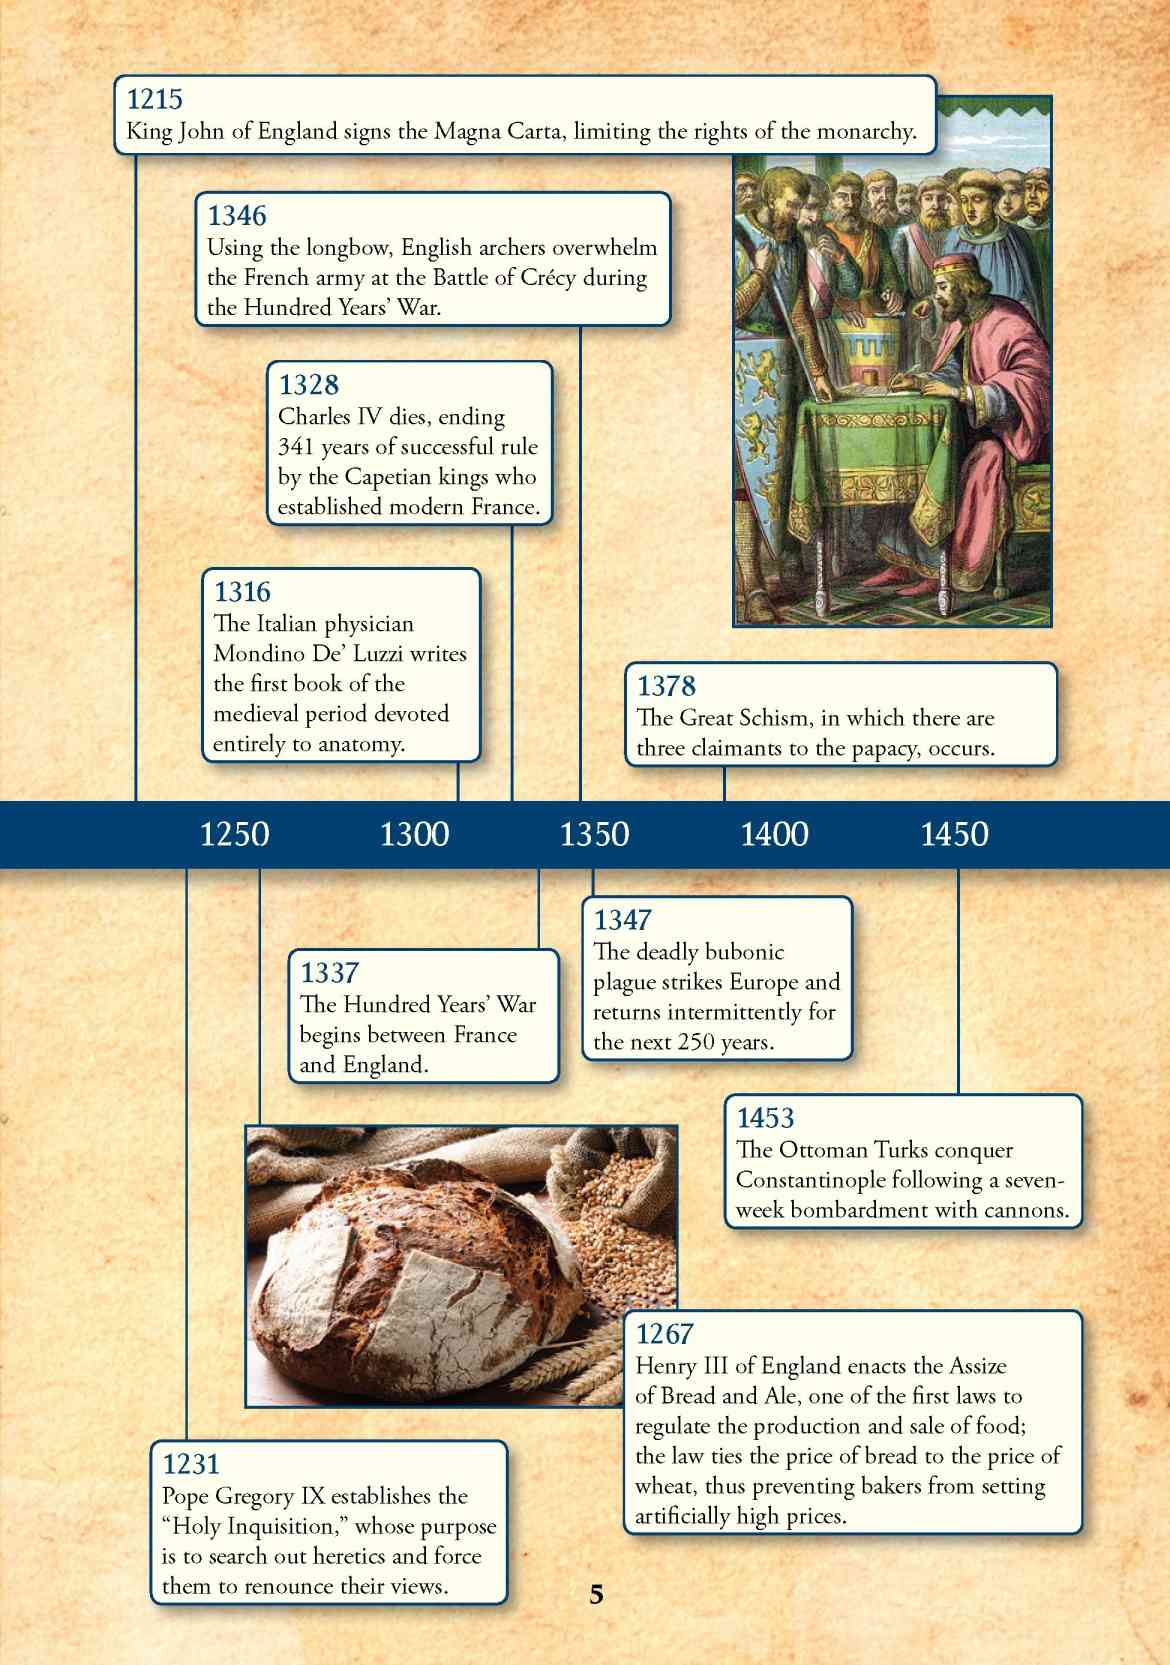 Σημαντικά γεγονότα κατά τη διάρκεια του Μεσαίωνα